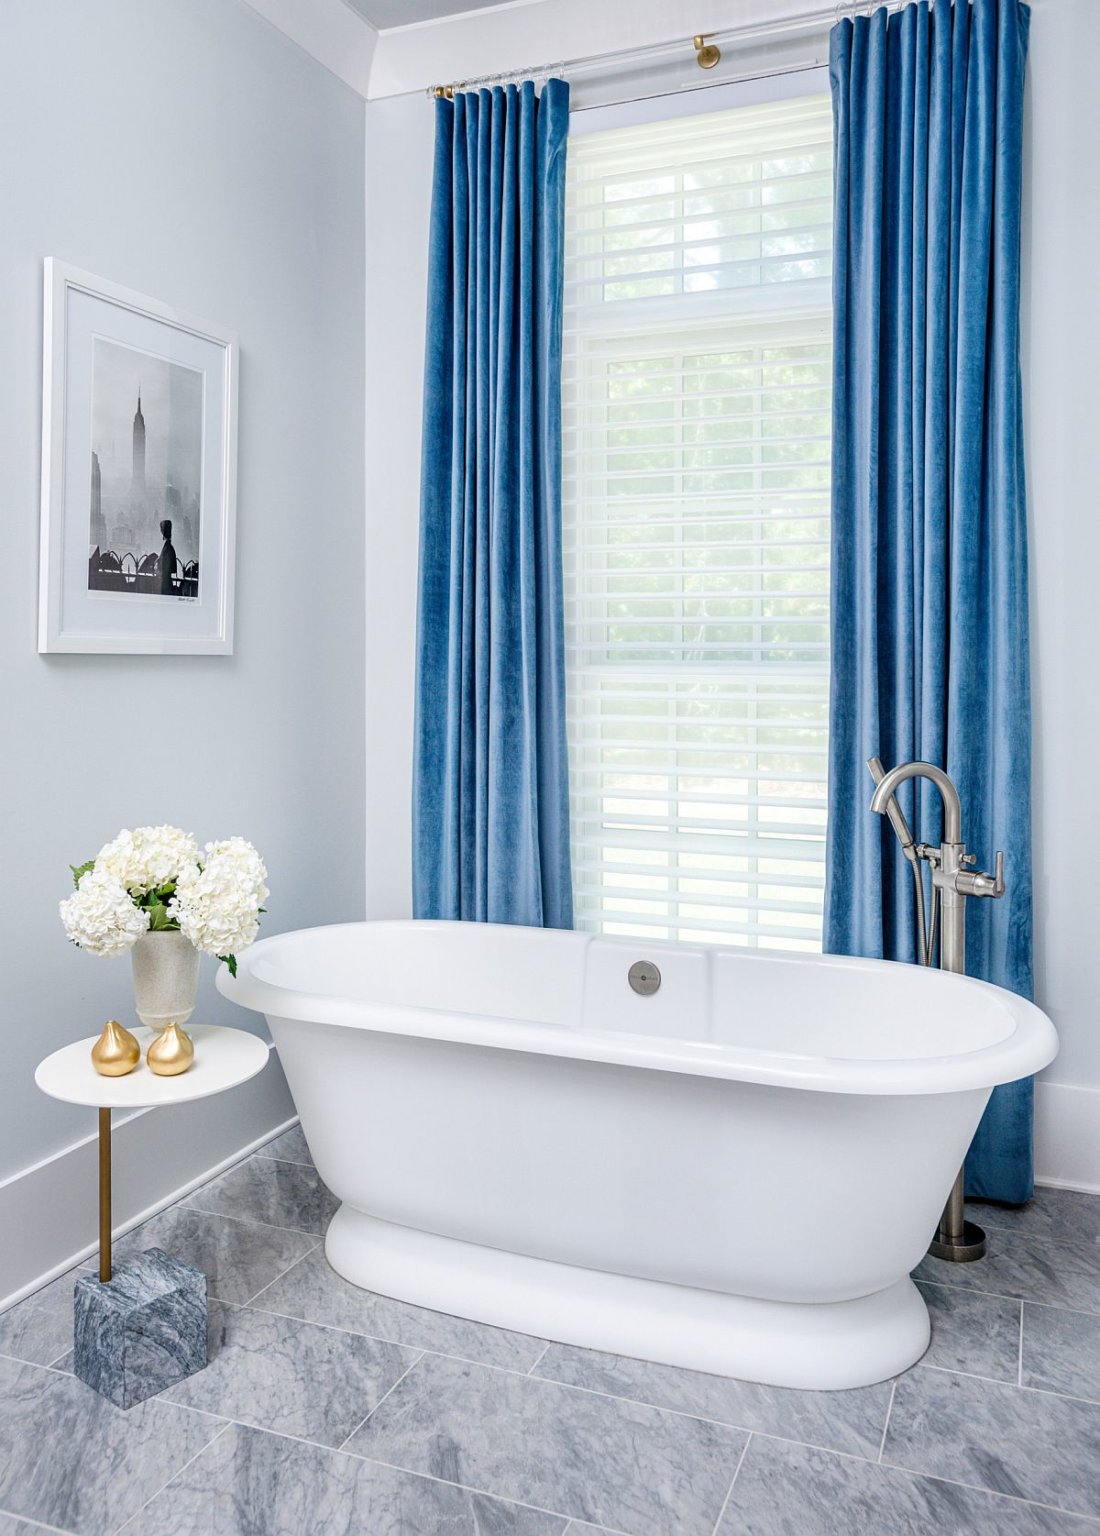 hình ảnh phòng tắm phong cách tối giản với rèm nhung màu xanh lam tạo điểm nhấn hút mắt